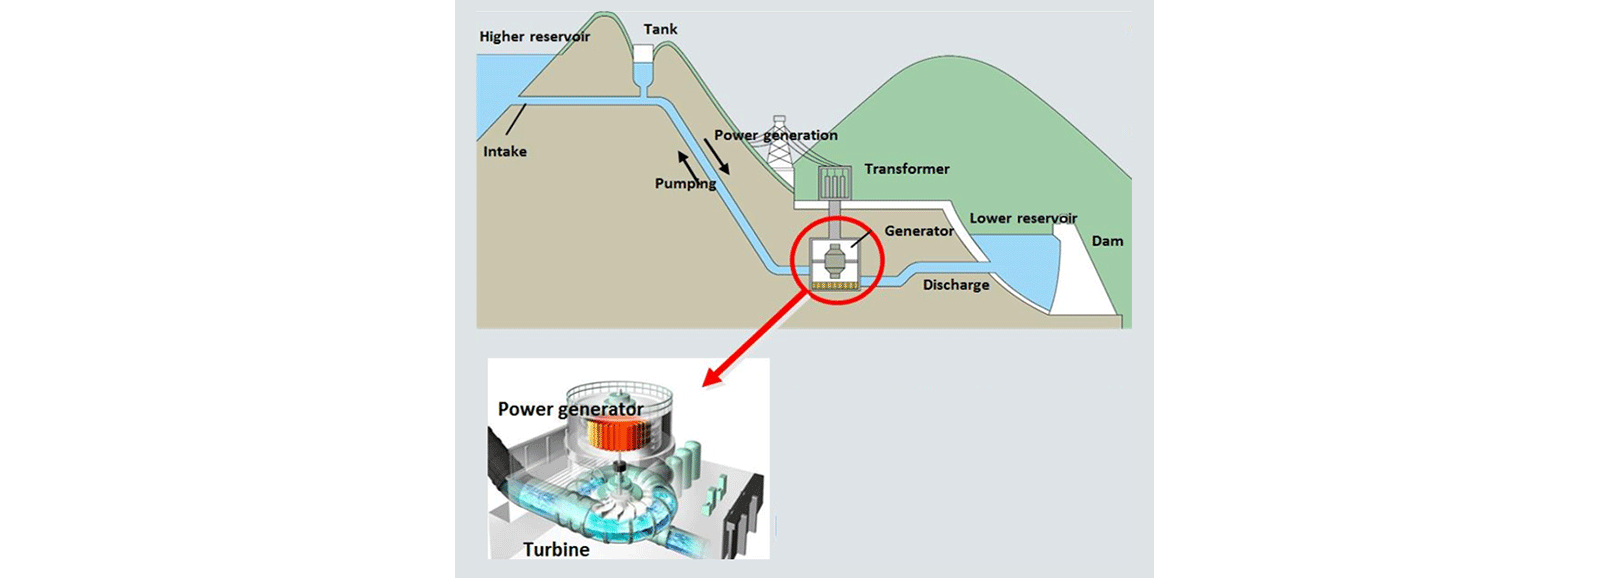 Гидроэлектростанция: производство энергии путем перекачки